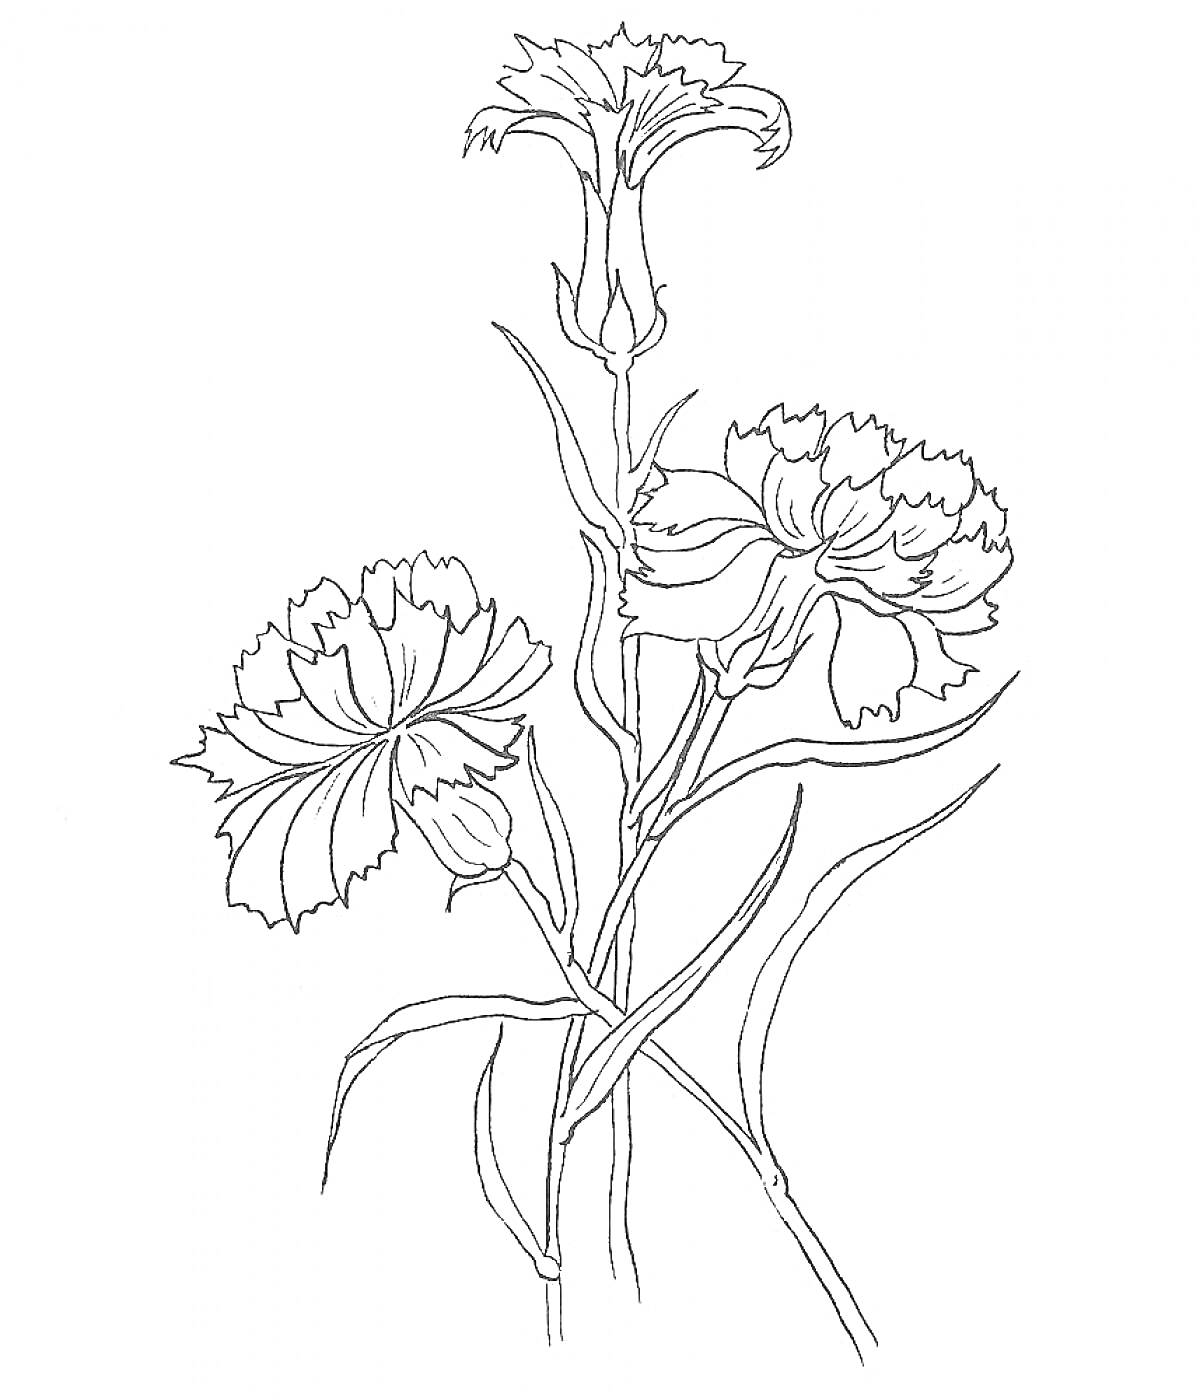 Гвоздика с цветками и бутонами на стебле